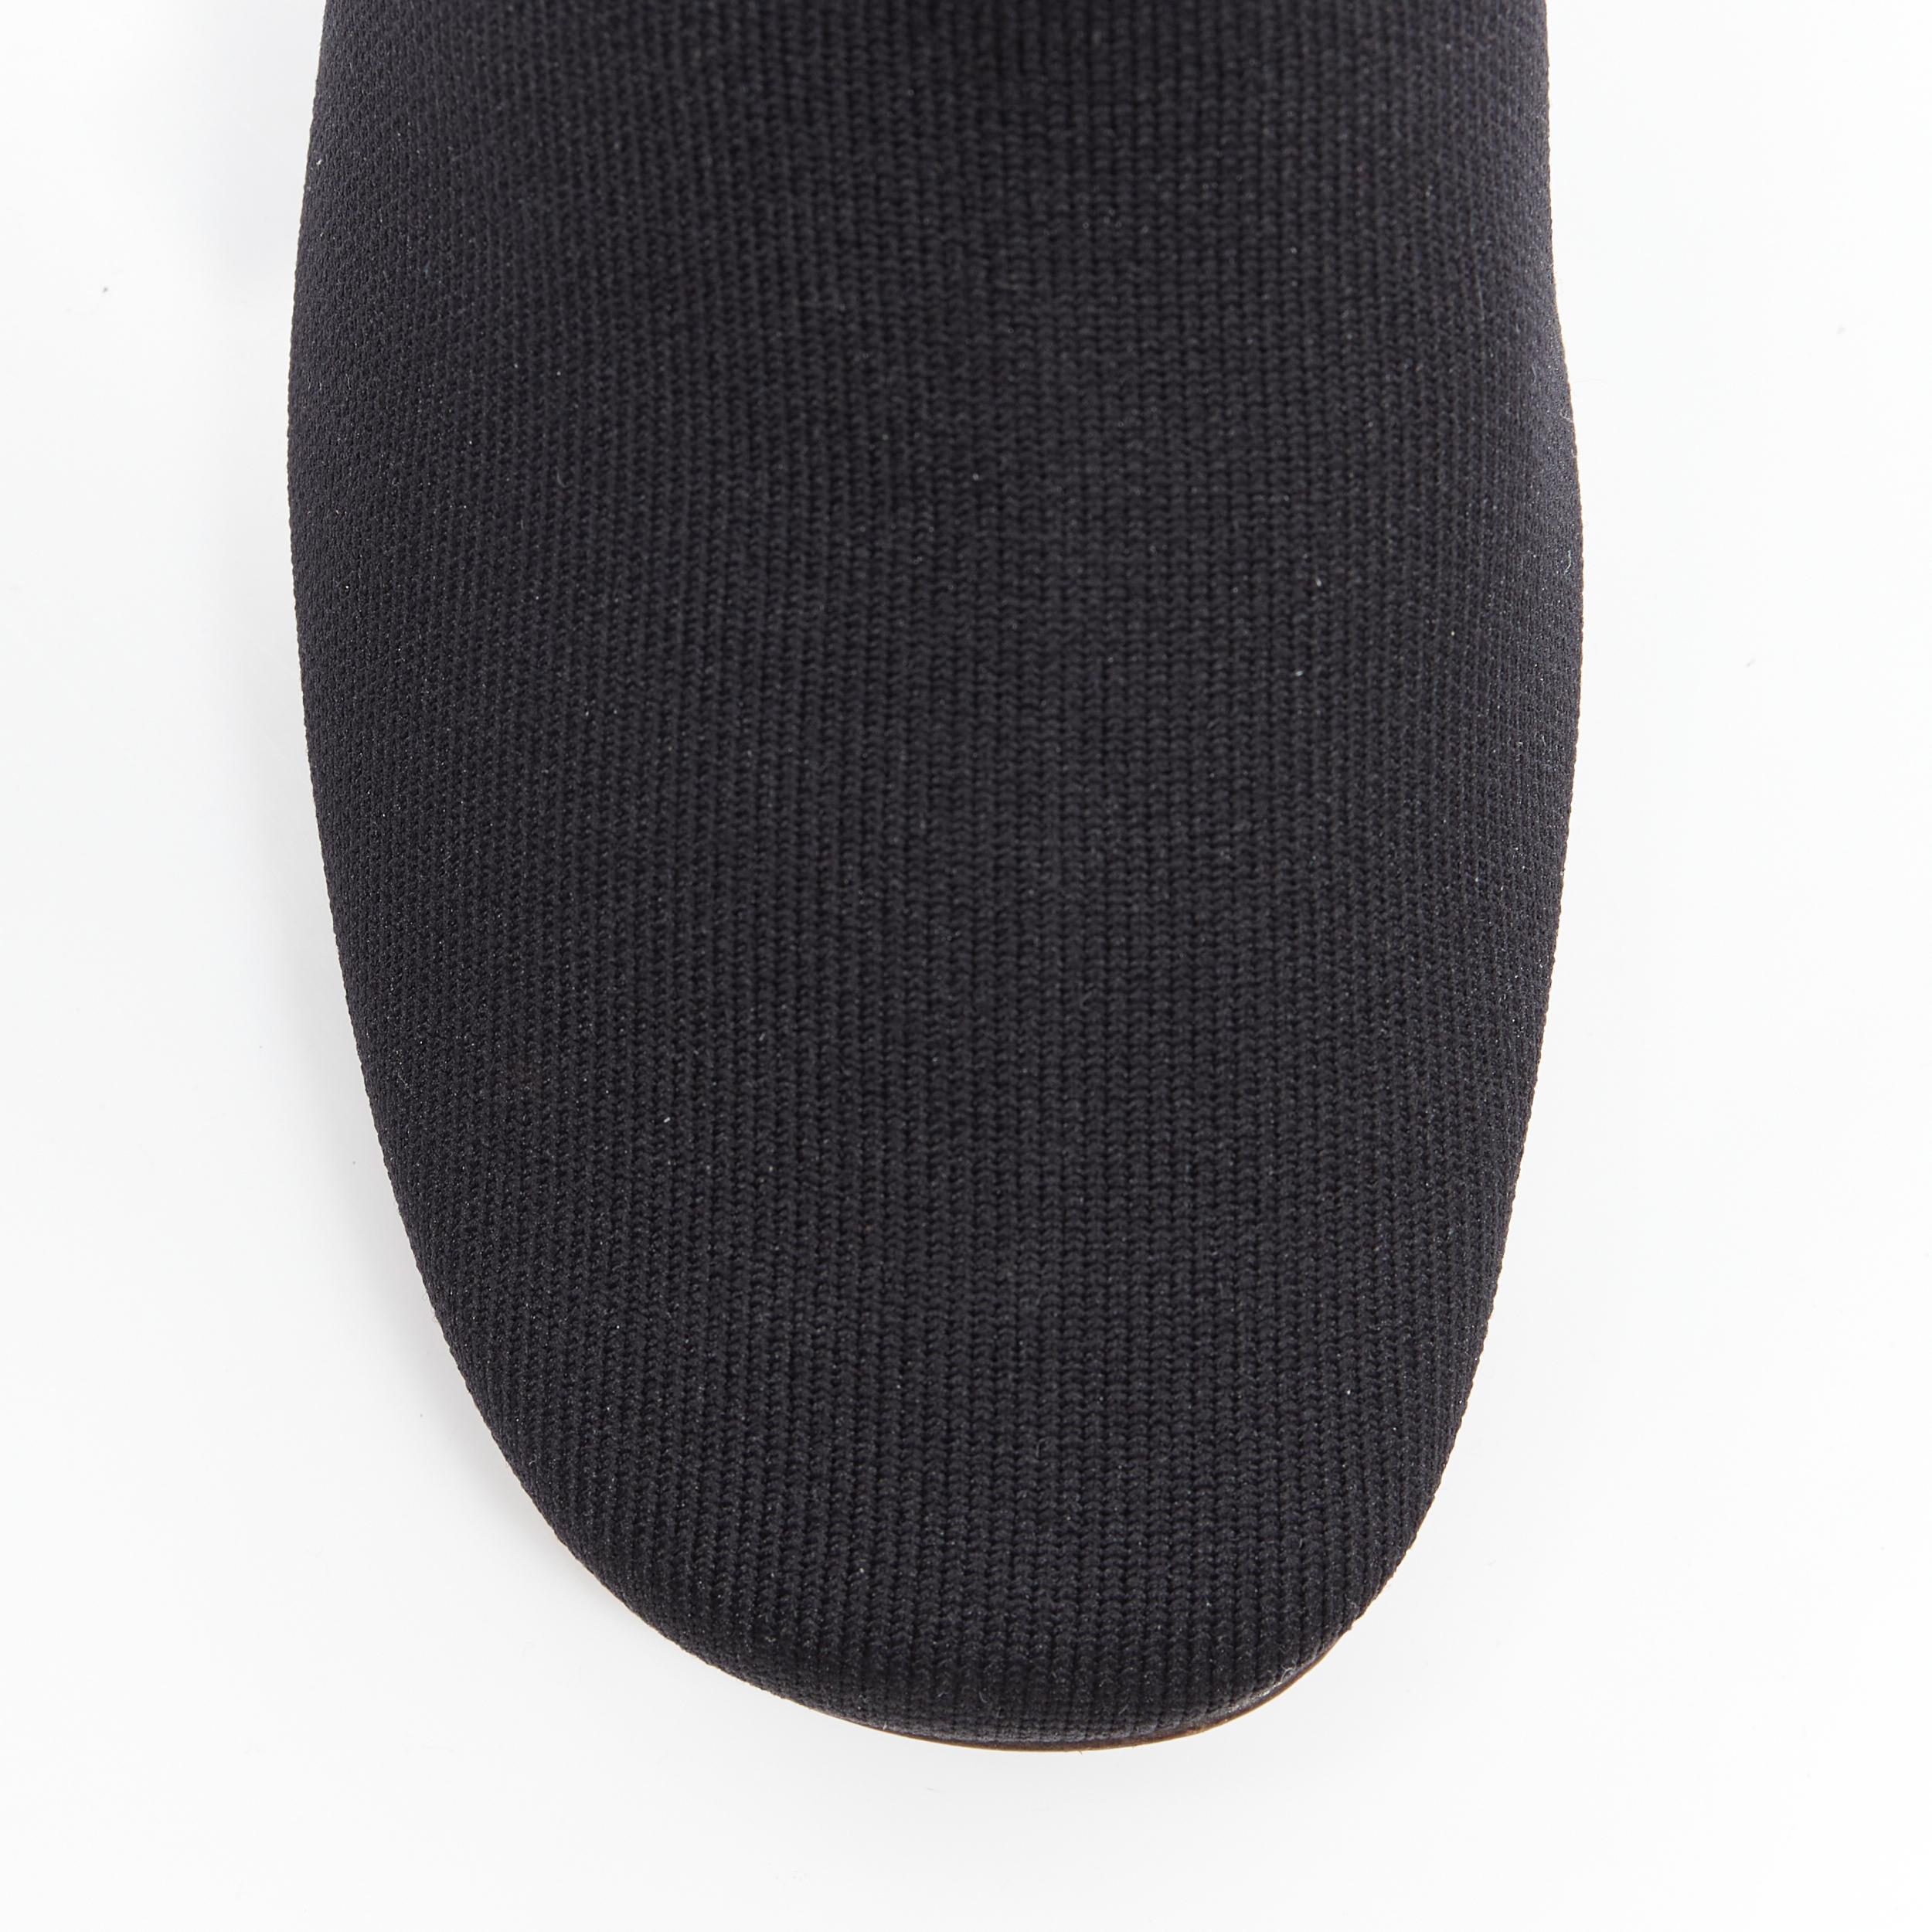 Women's OLD CELINE PHOEBE PHILO black sock knit round toe wooden block heel bootie EU37